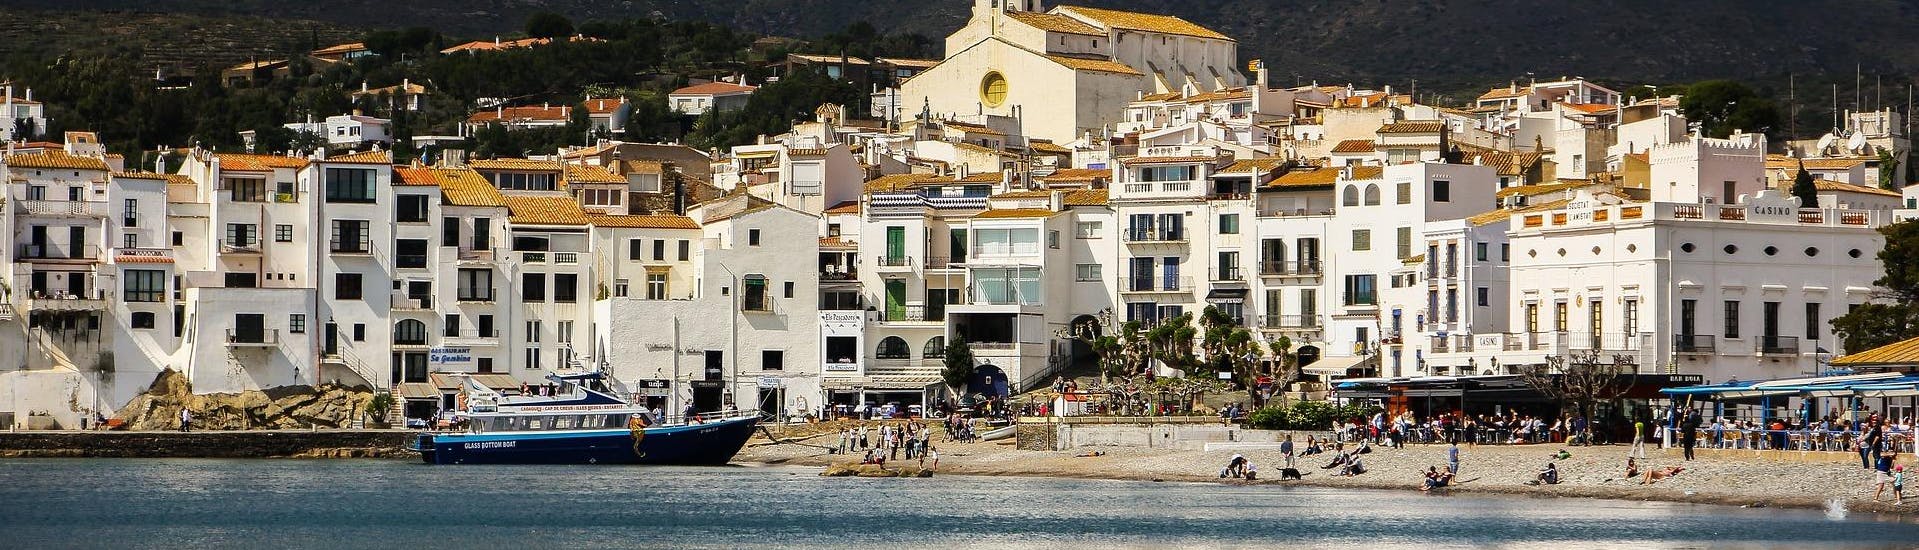 Blick auf die Küste während einer Bootsfahrt nach Cadaqués.